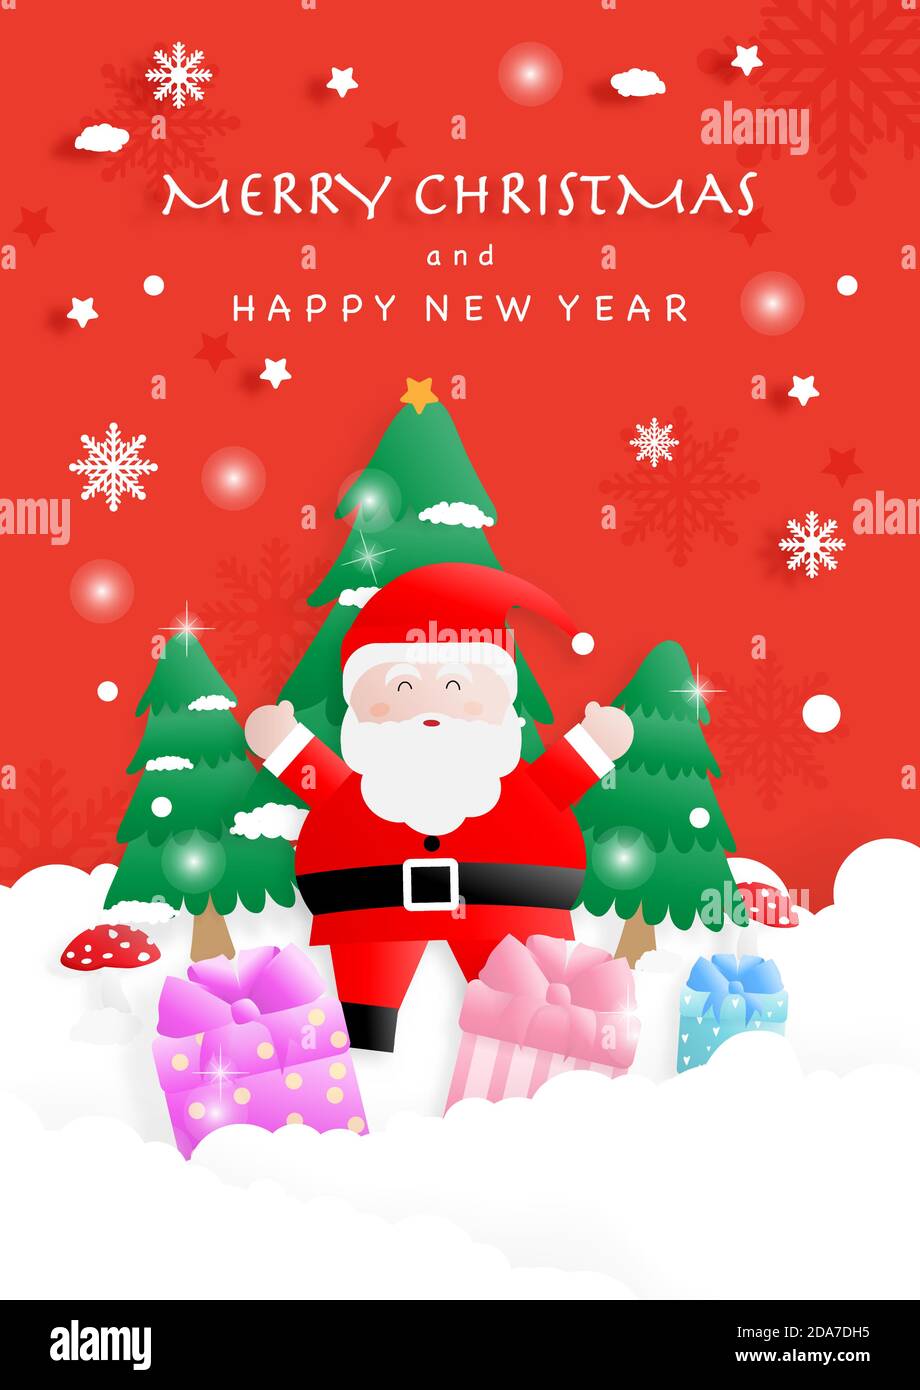 Joyeux Noël. Santa claus, caleçons, flocons de neige, pins, champignons et texte sur fond rouge. Illustration vectorielle. Illustration de Vecteur